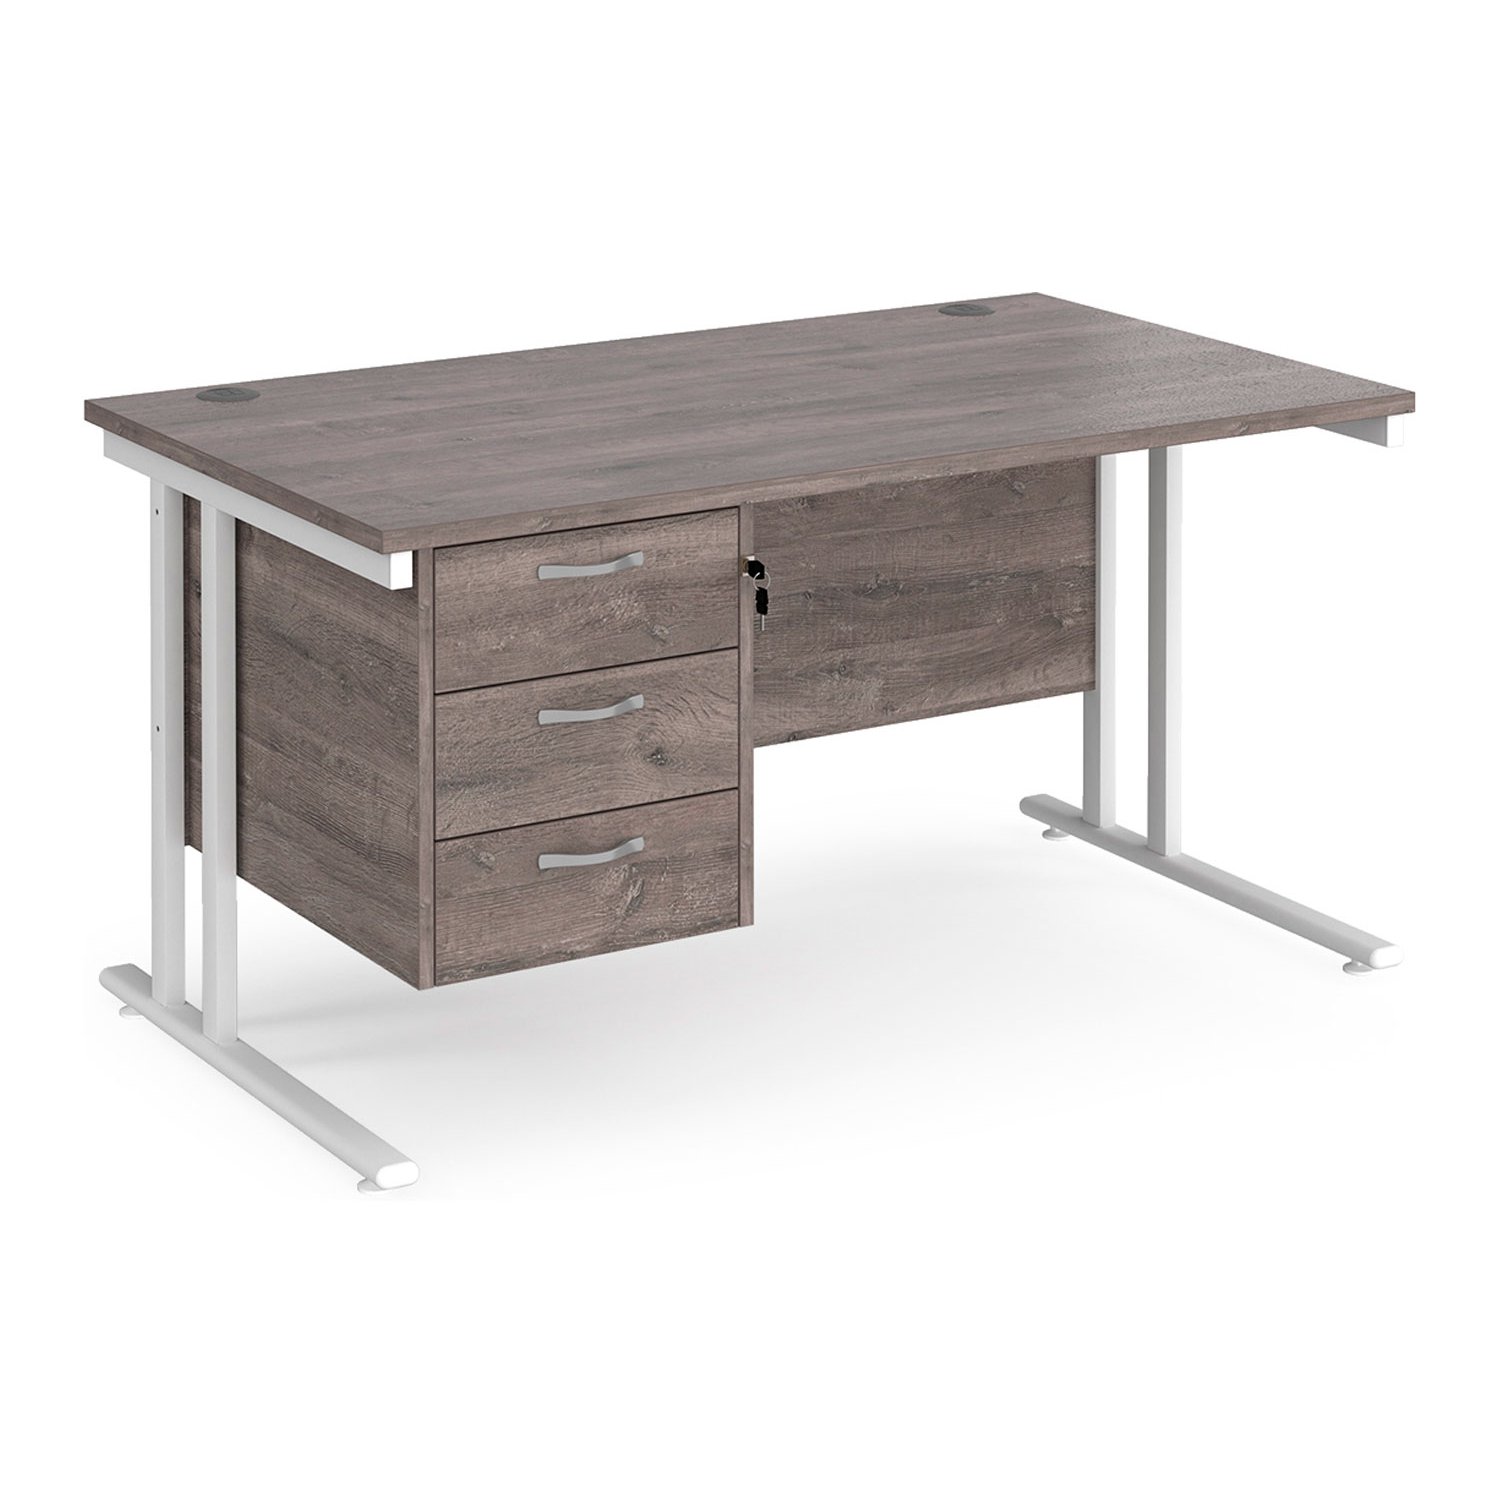 Value Line Deluxe C-Leg Rectangular Desk 3 Drawers (White Legs), 140wx80dx73h (cm), Grey Oak